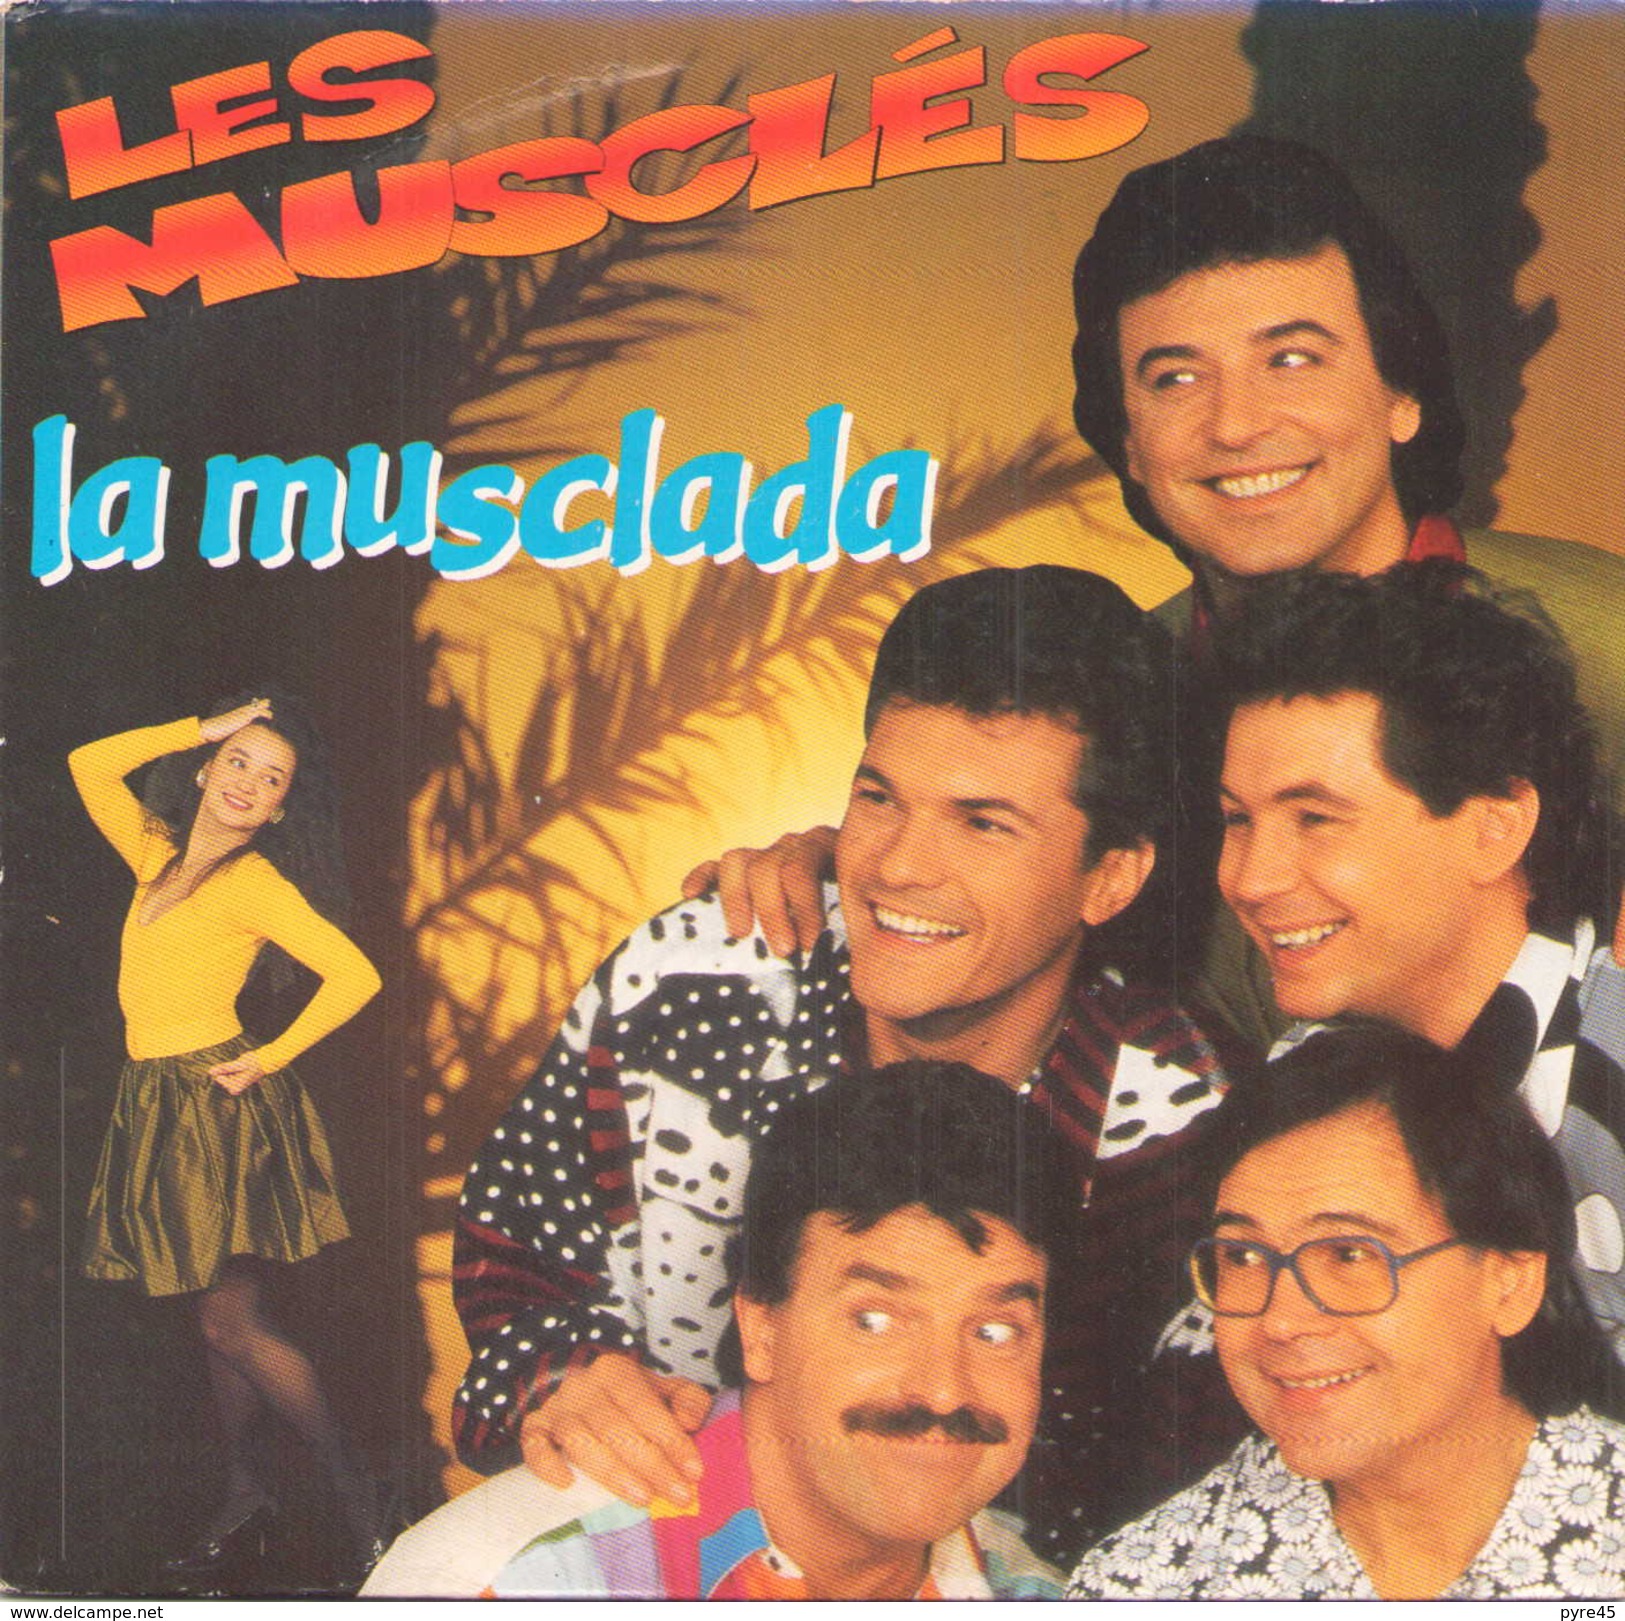 45 T Les Muscles La Musclada 1990 AB Hit 879832 - Humour, Cabaret